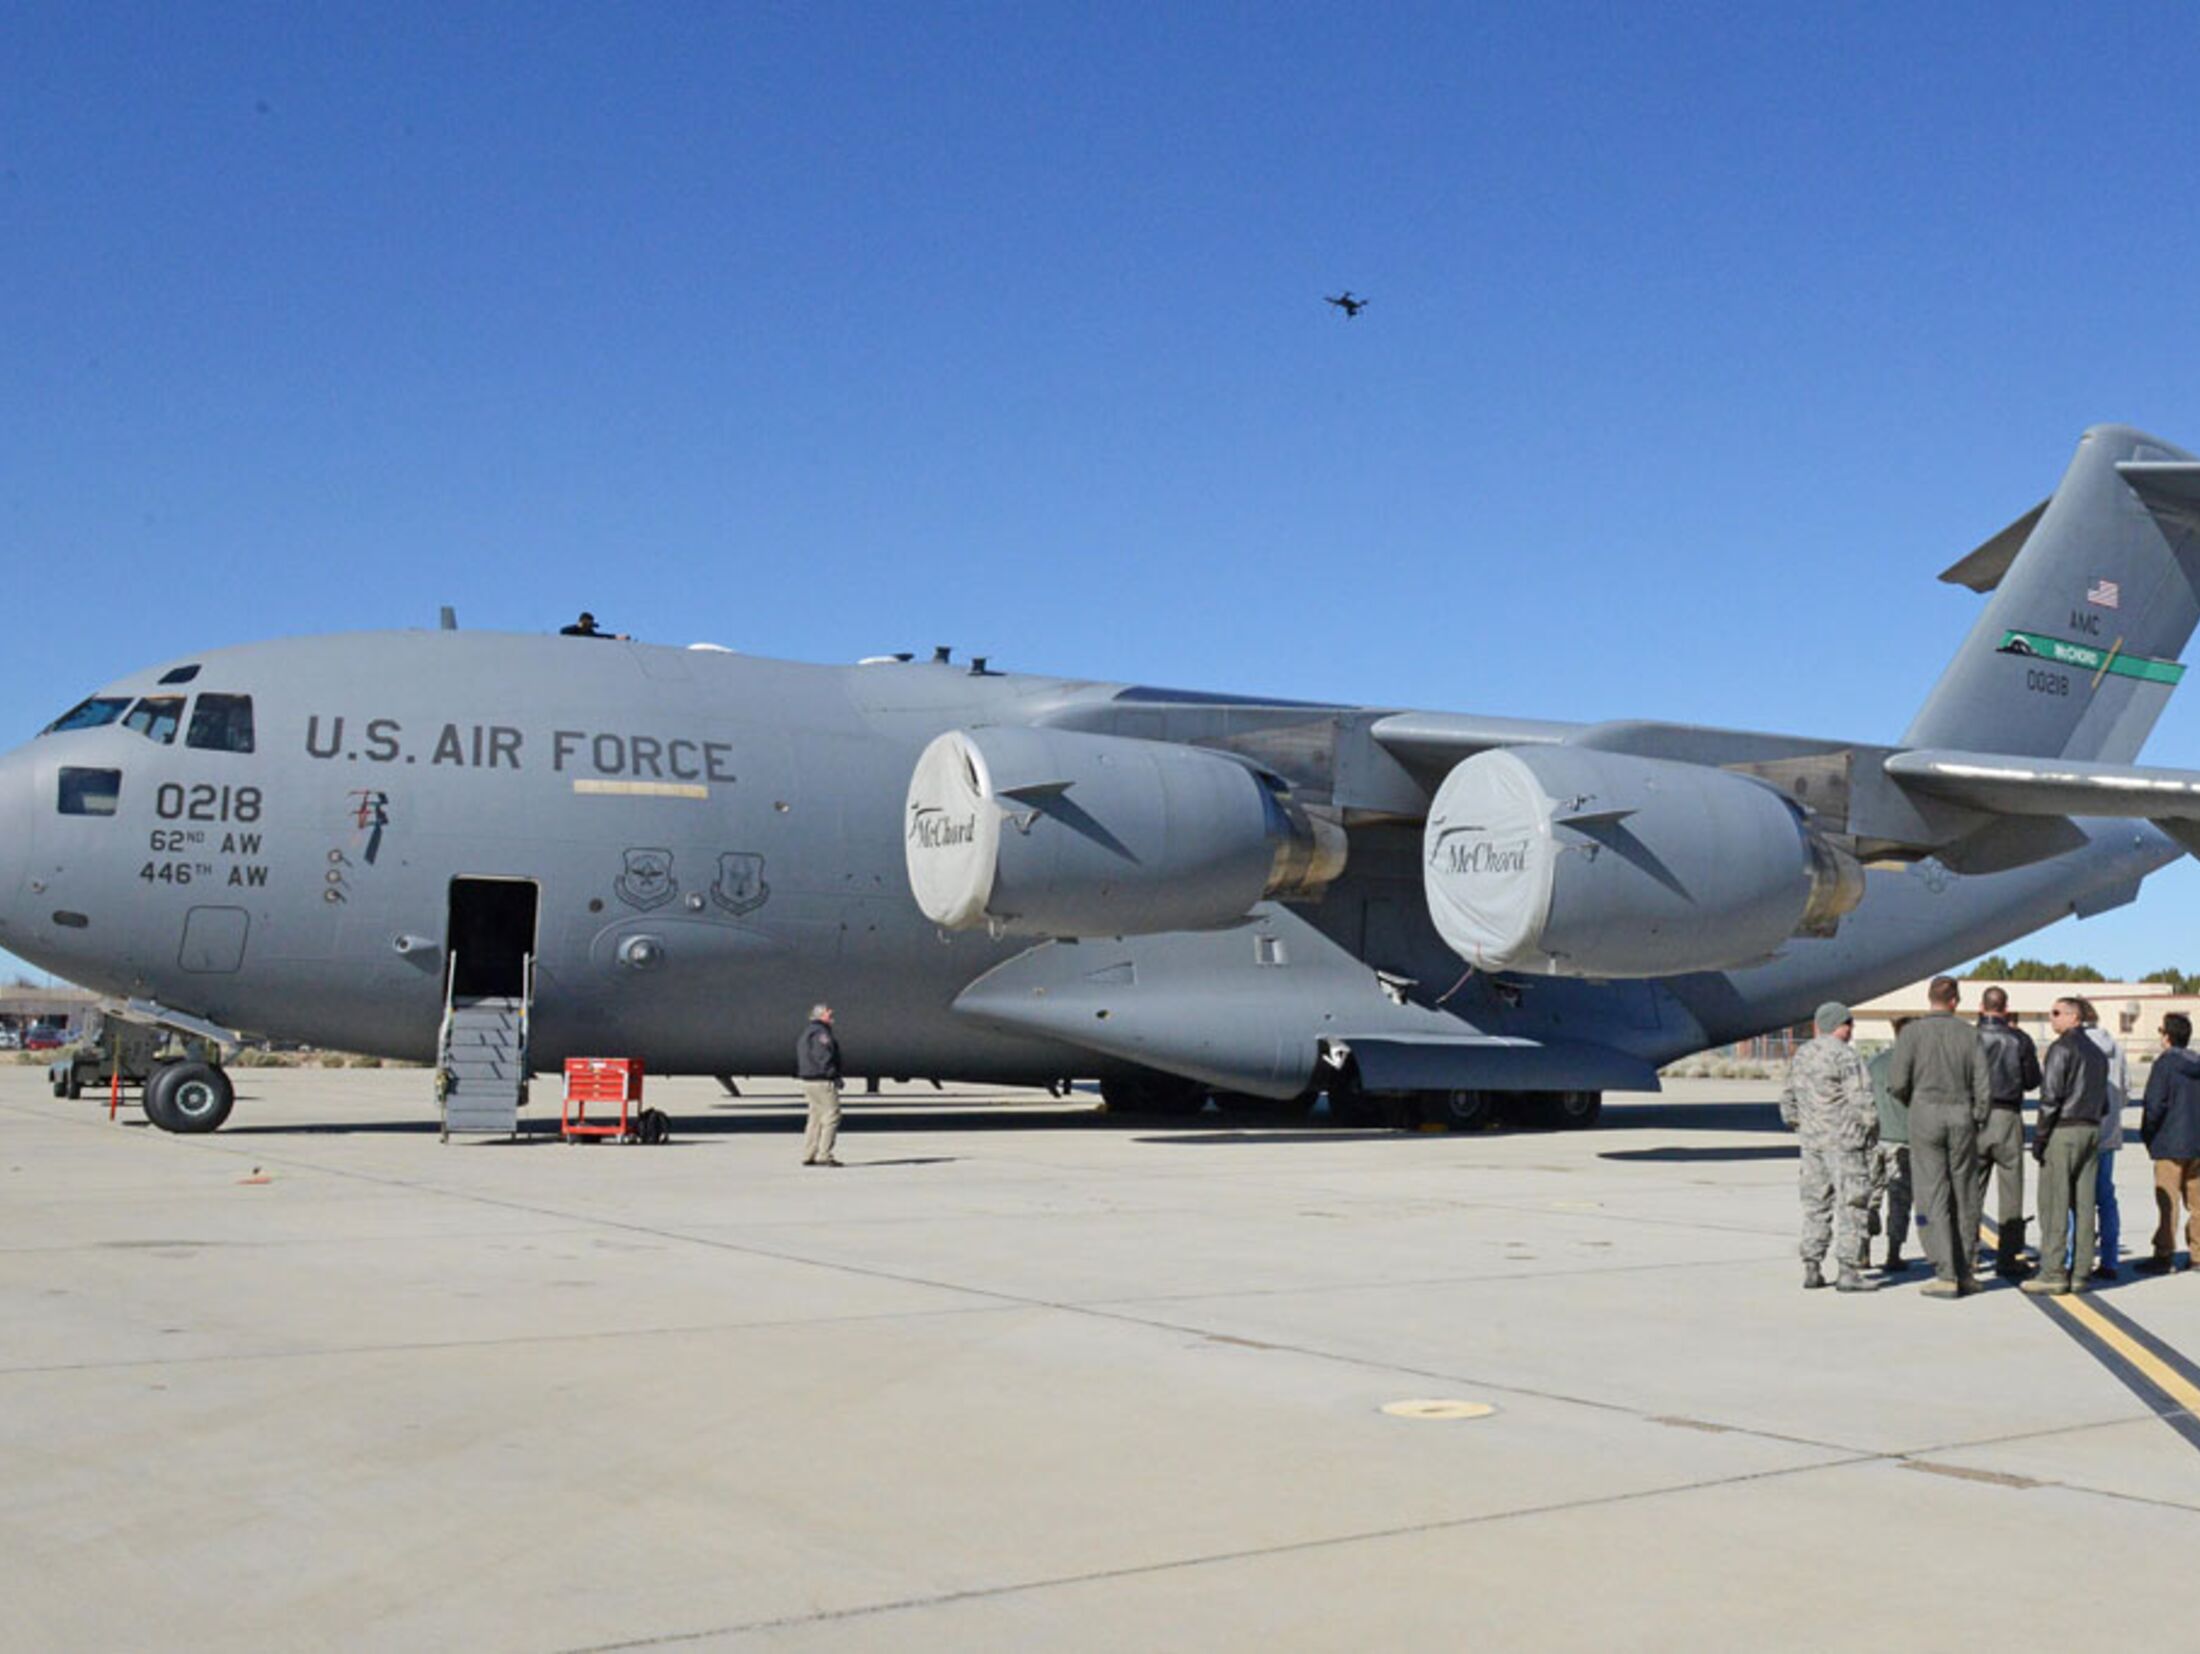 USAF testet Drohne für Vorfluginspektion